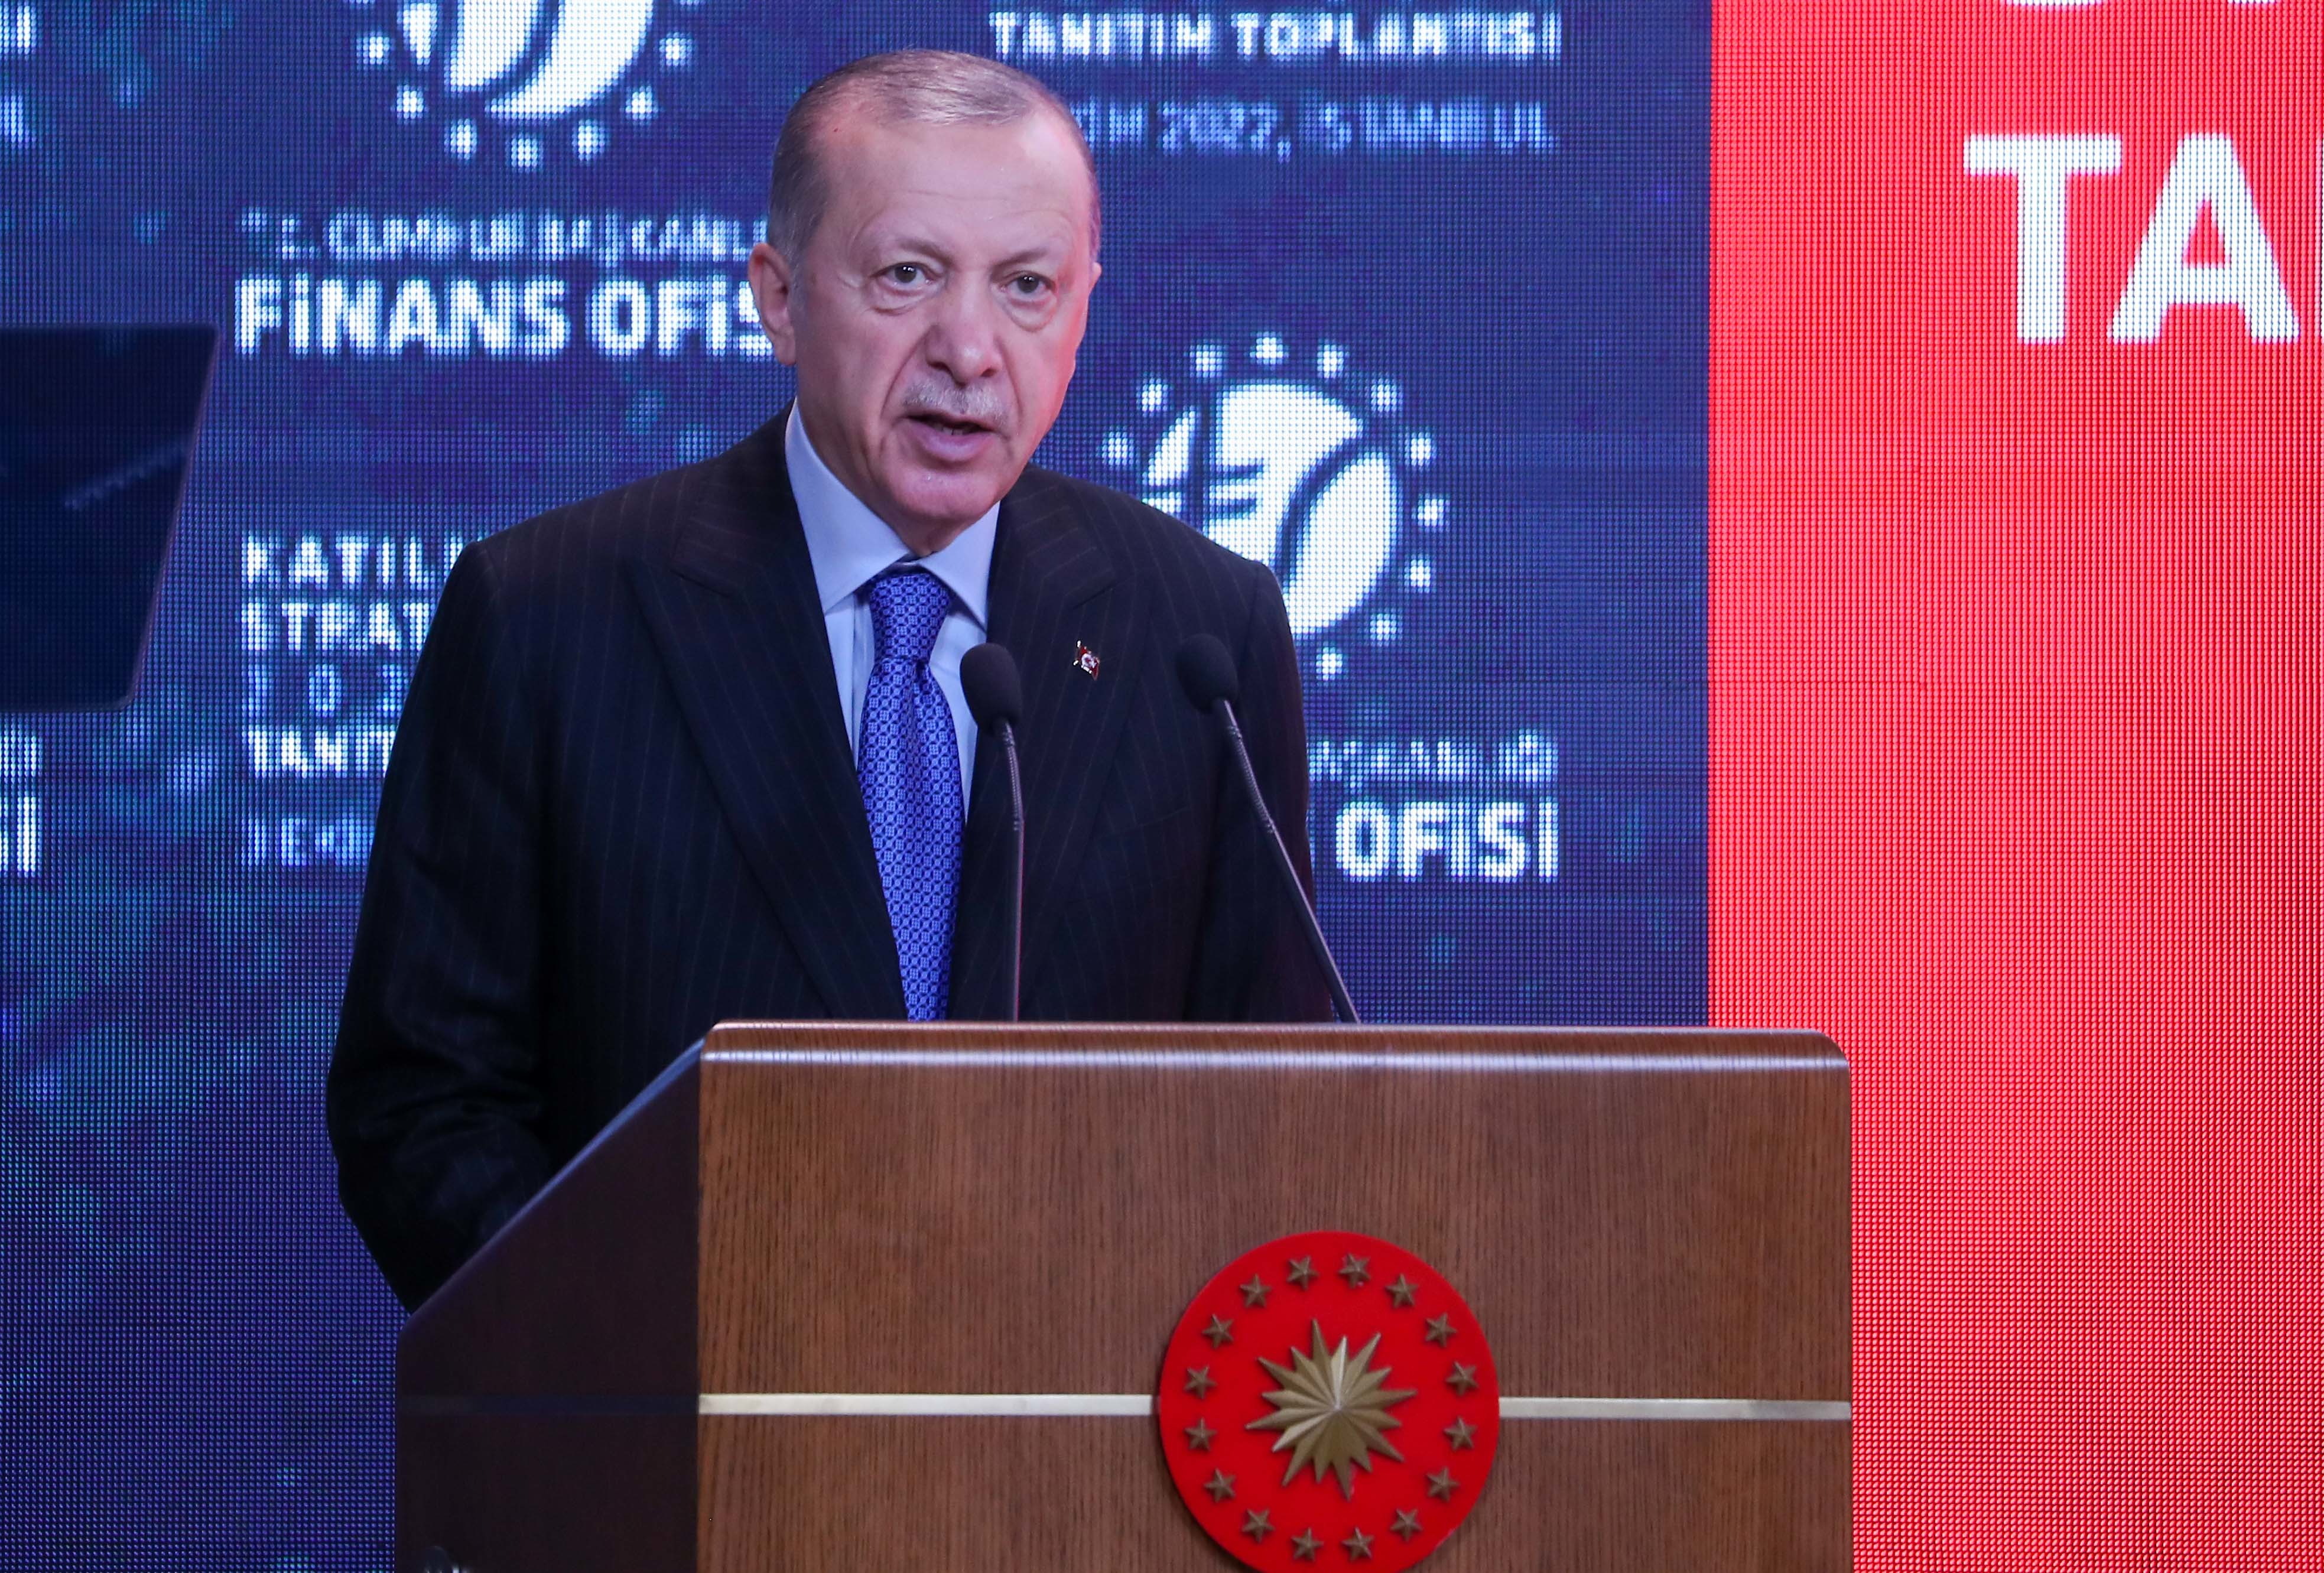 Cumhurbaşkanı Erdoğan: Enflasyonun üstesinden geleceğiz